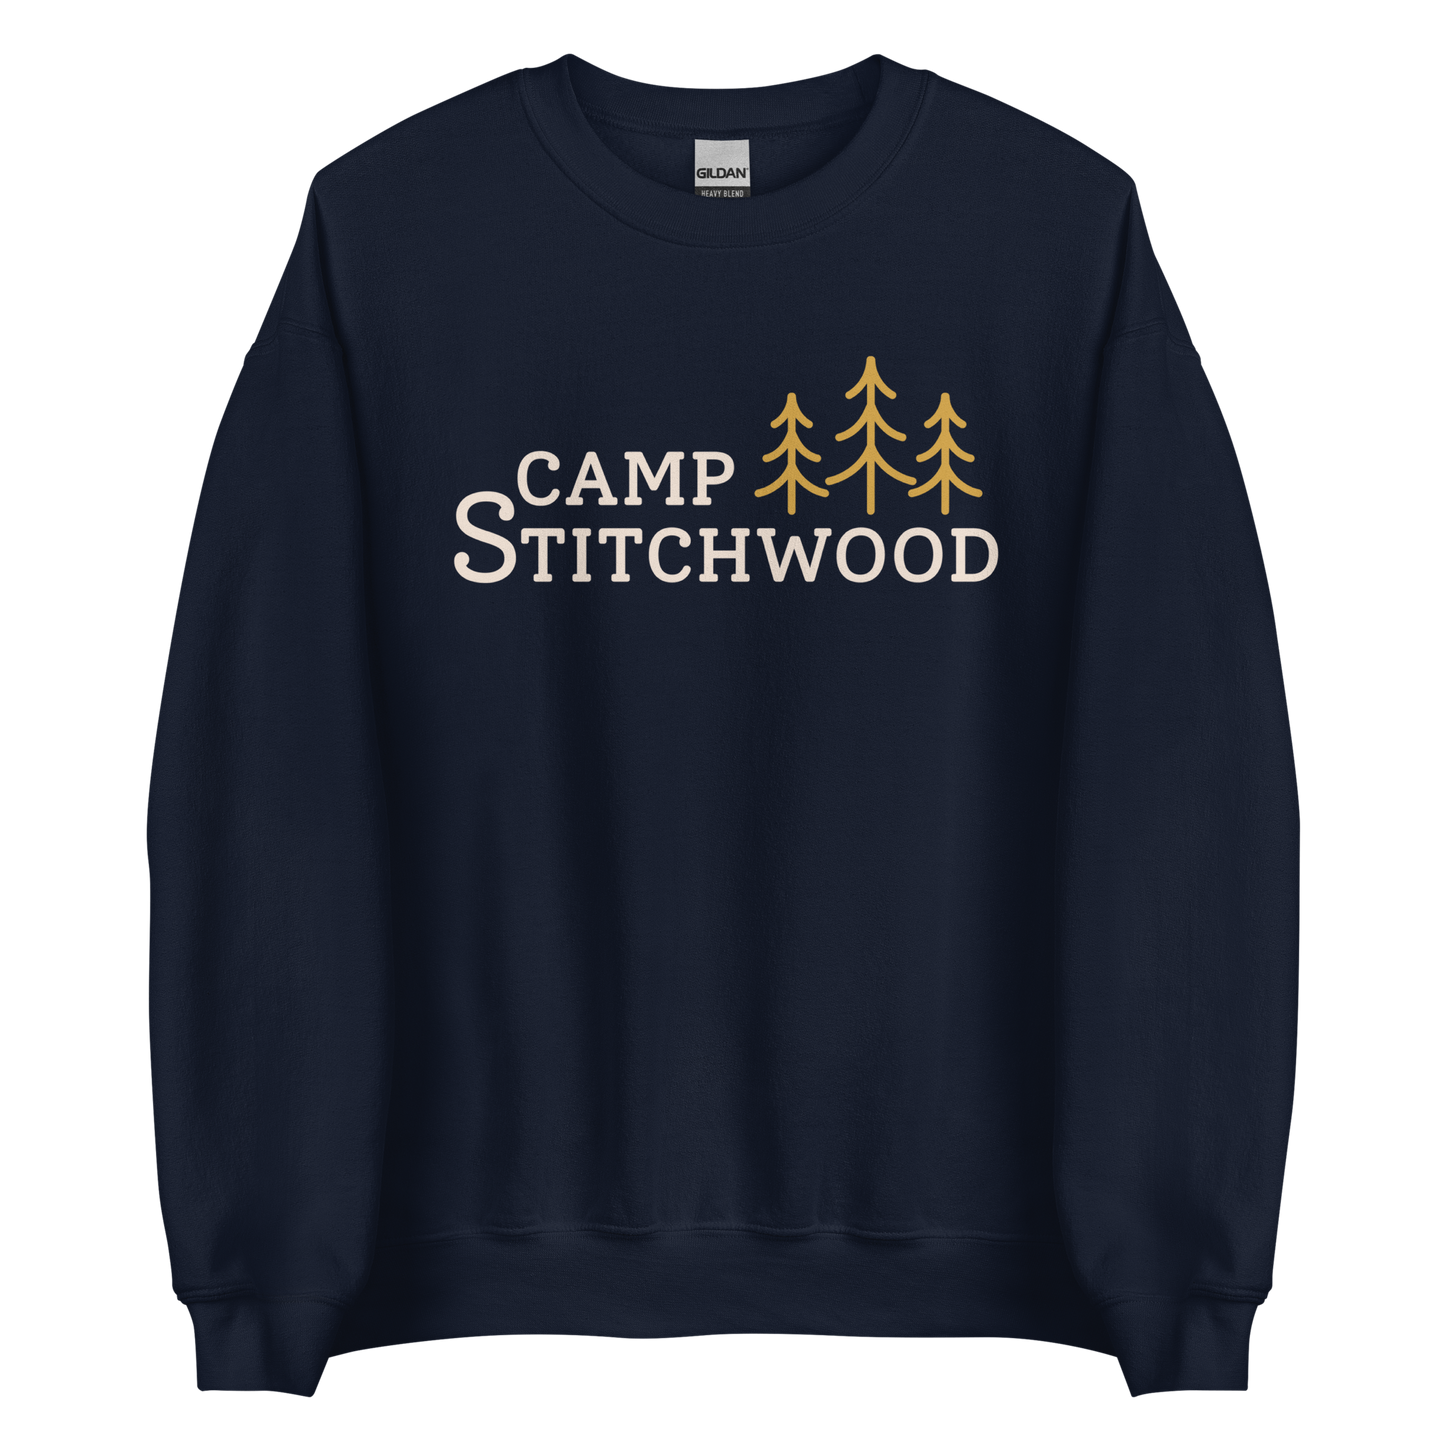 Camp Stitchwood Sweatshirt, Unisex